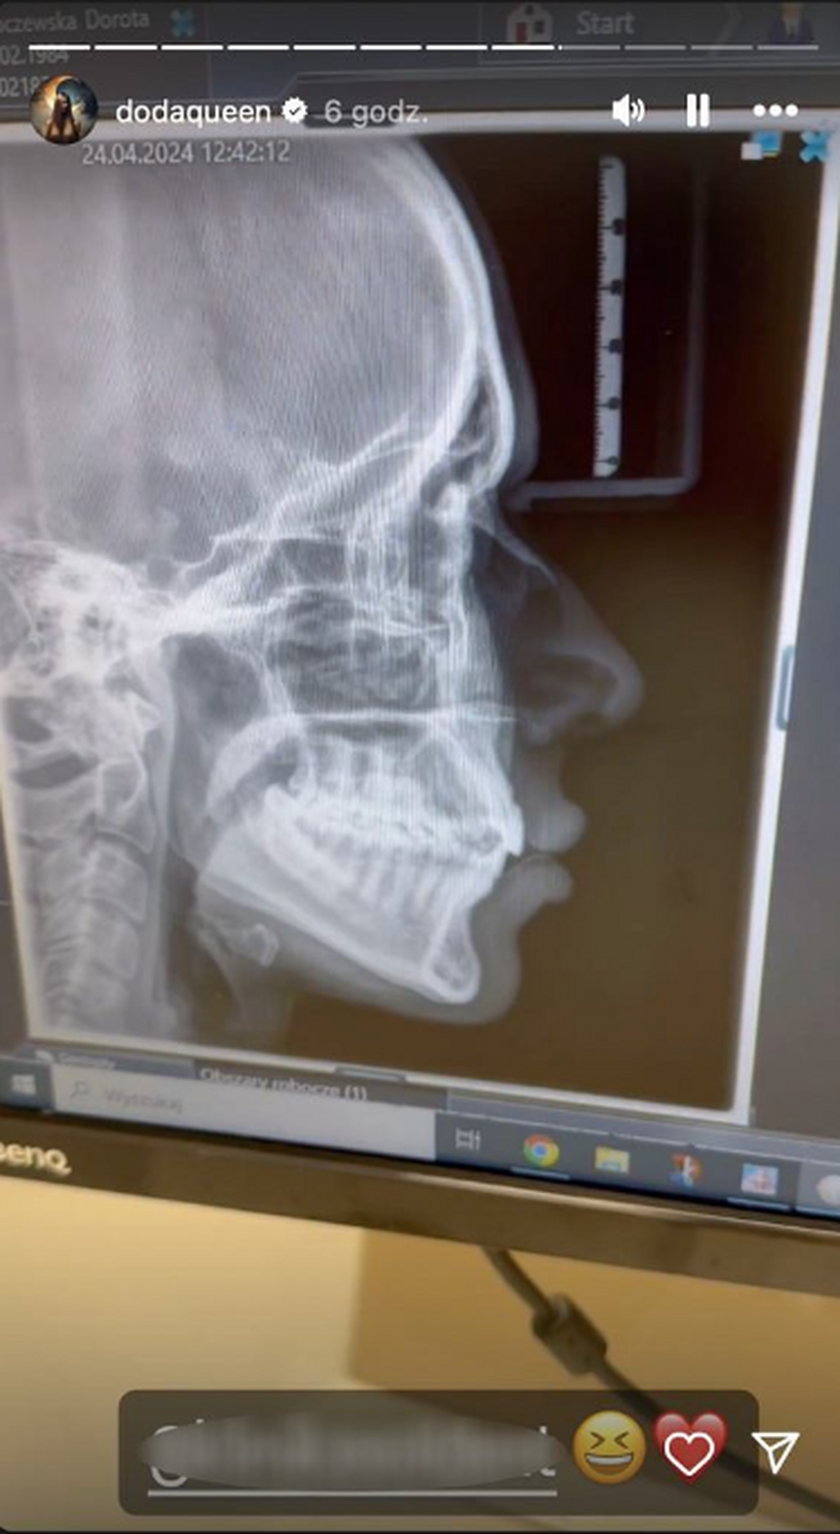 Doda pokazała zdjęcie rentgenowskie.